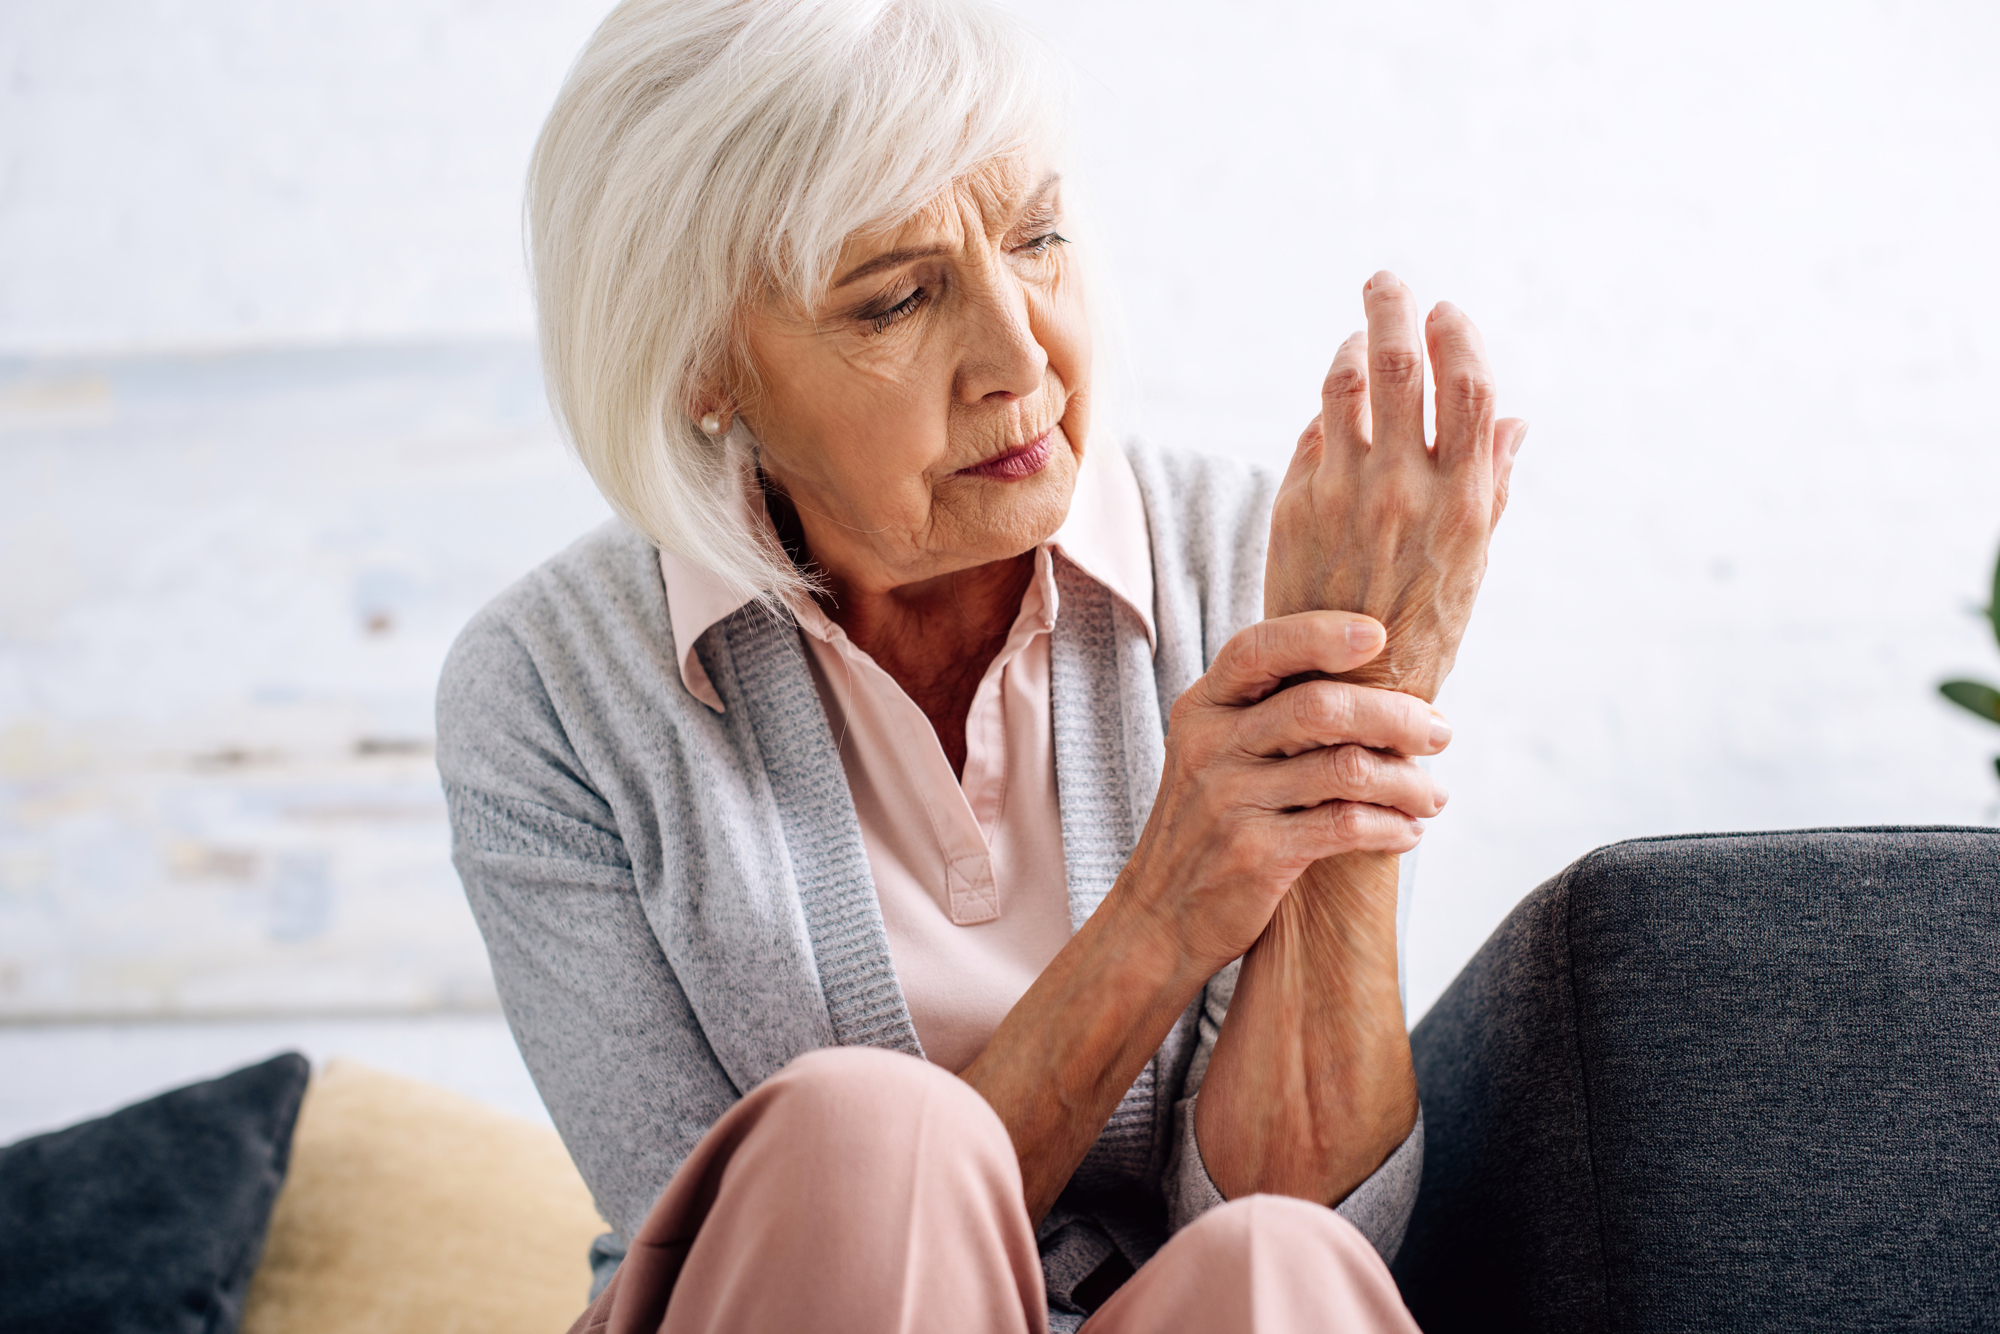 Revmatoidni artritis je lahko precej nadležen v marsikateri situaciji